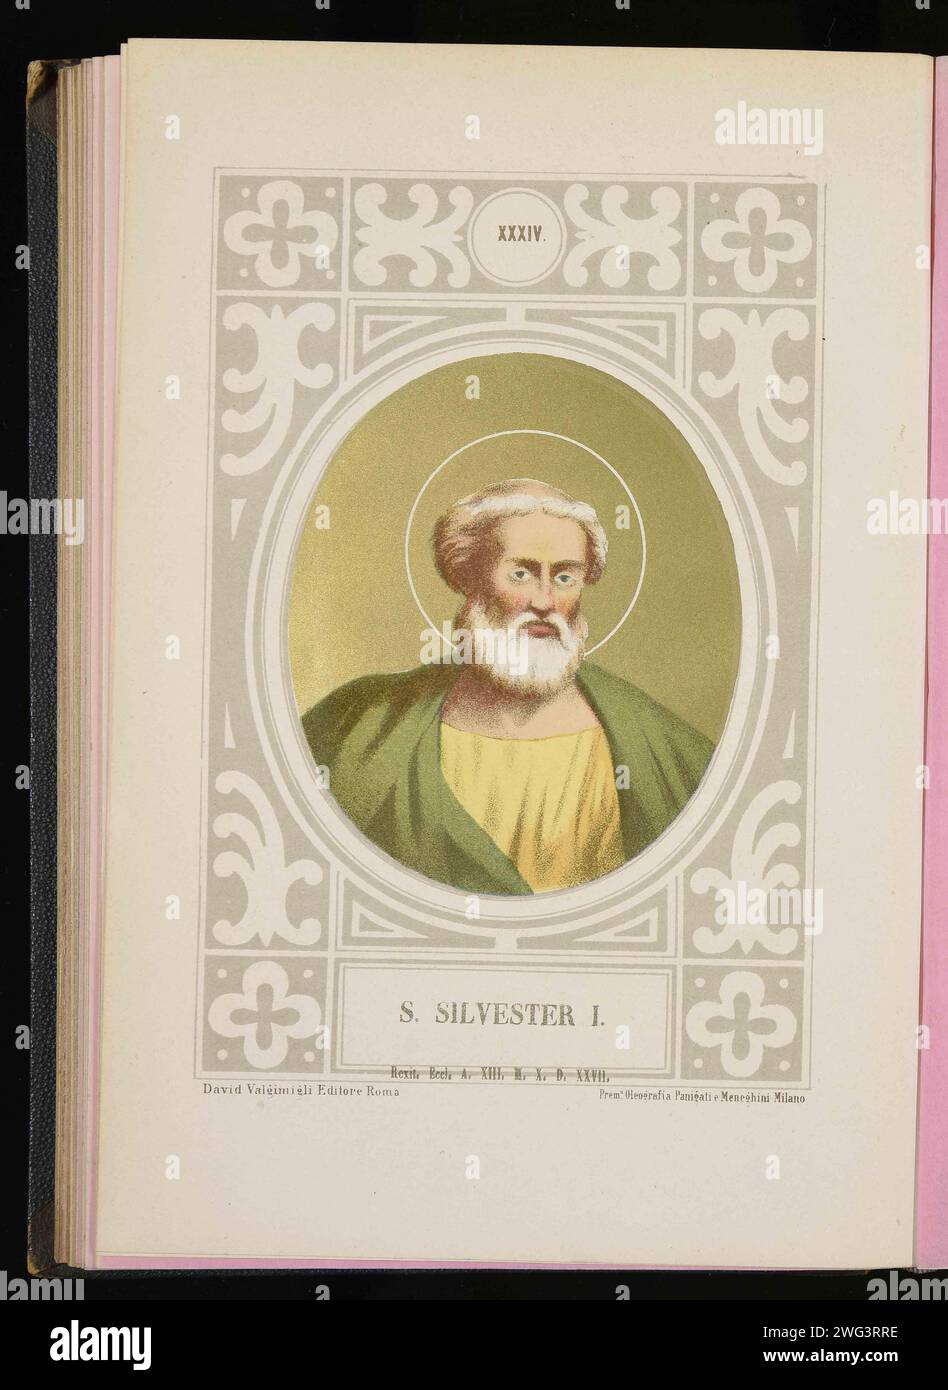 Un'incisione del 1879 di Papa Silvestro i che fu pontefice dall'AD314 all'AD335. Era il 33° papa. Foto Stock